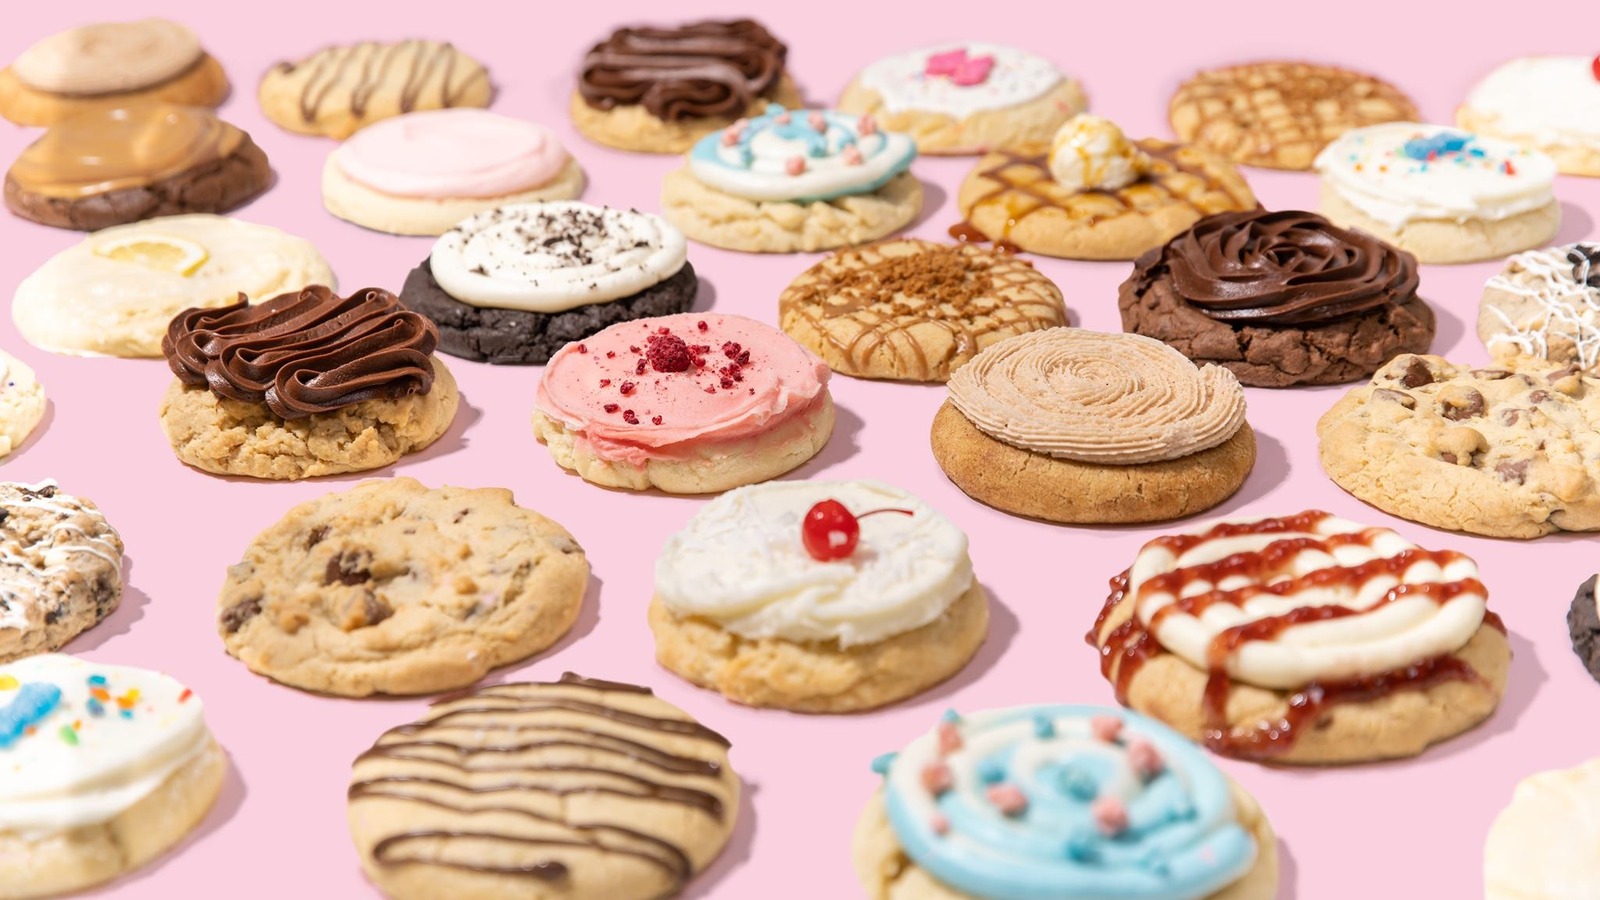 crumbl-cookies-flavors-list-qubig-on-com